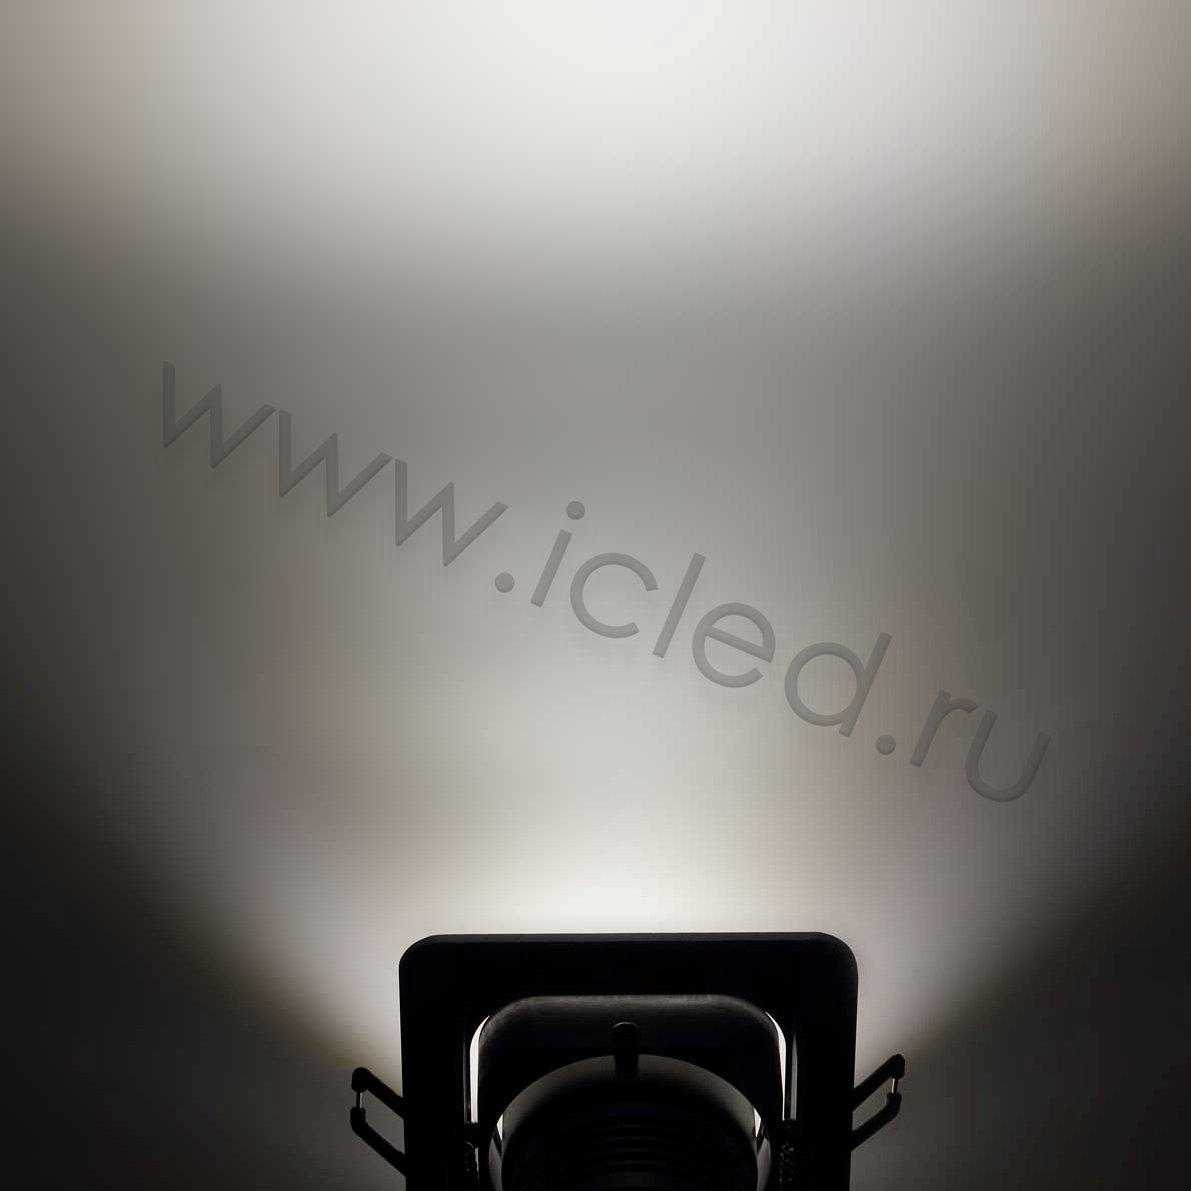 Светодиодные светильники Светодиодный светильник встраиваемый 98.1 series silver housing BW104 (5W,220V,day white)